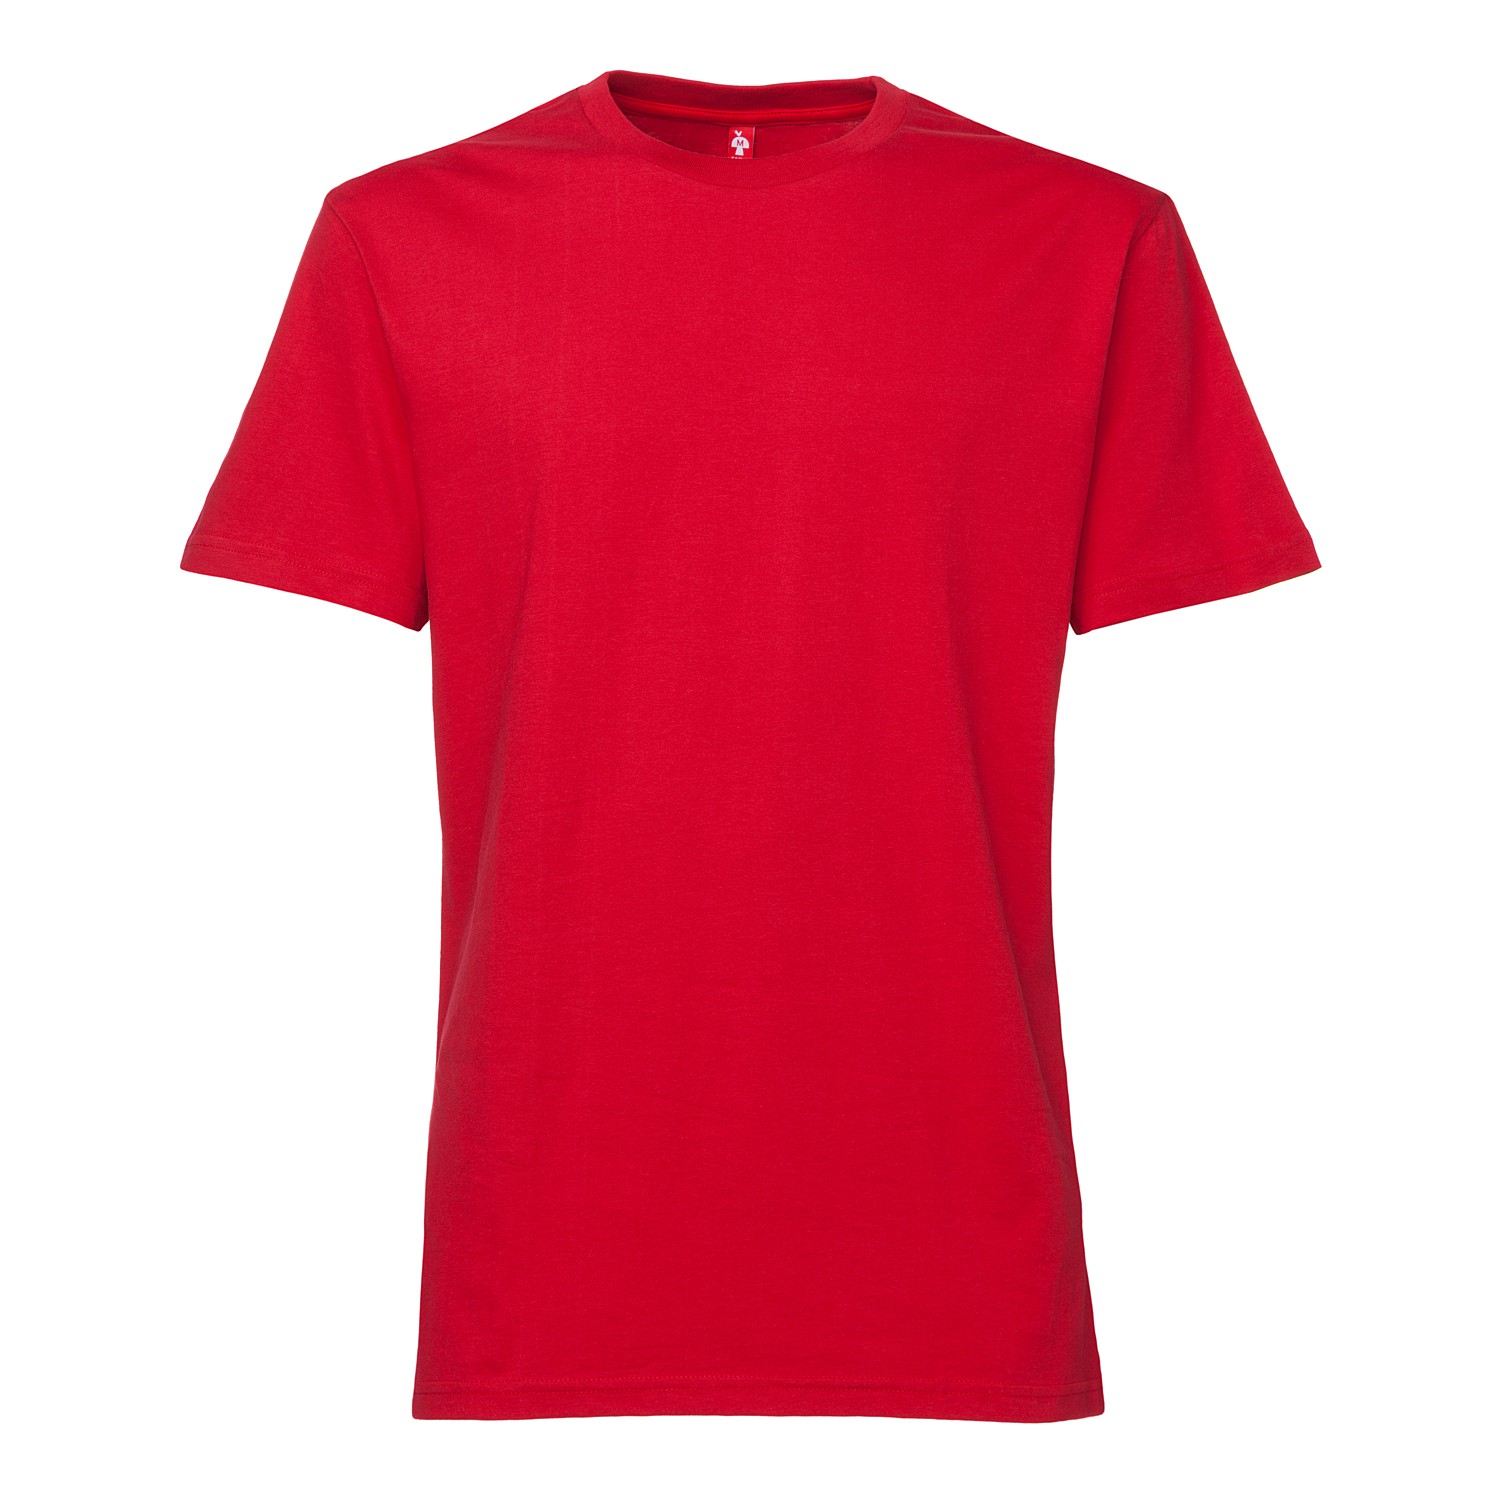 TT02 T-Shirt Red Gentlemen T-Shirt Plain TT02 T-Shirt